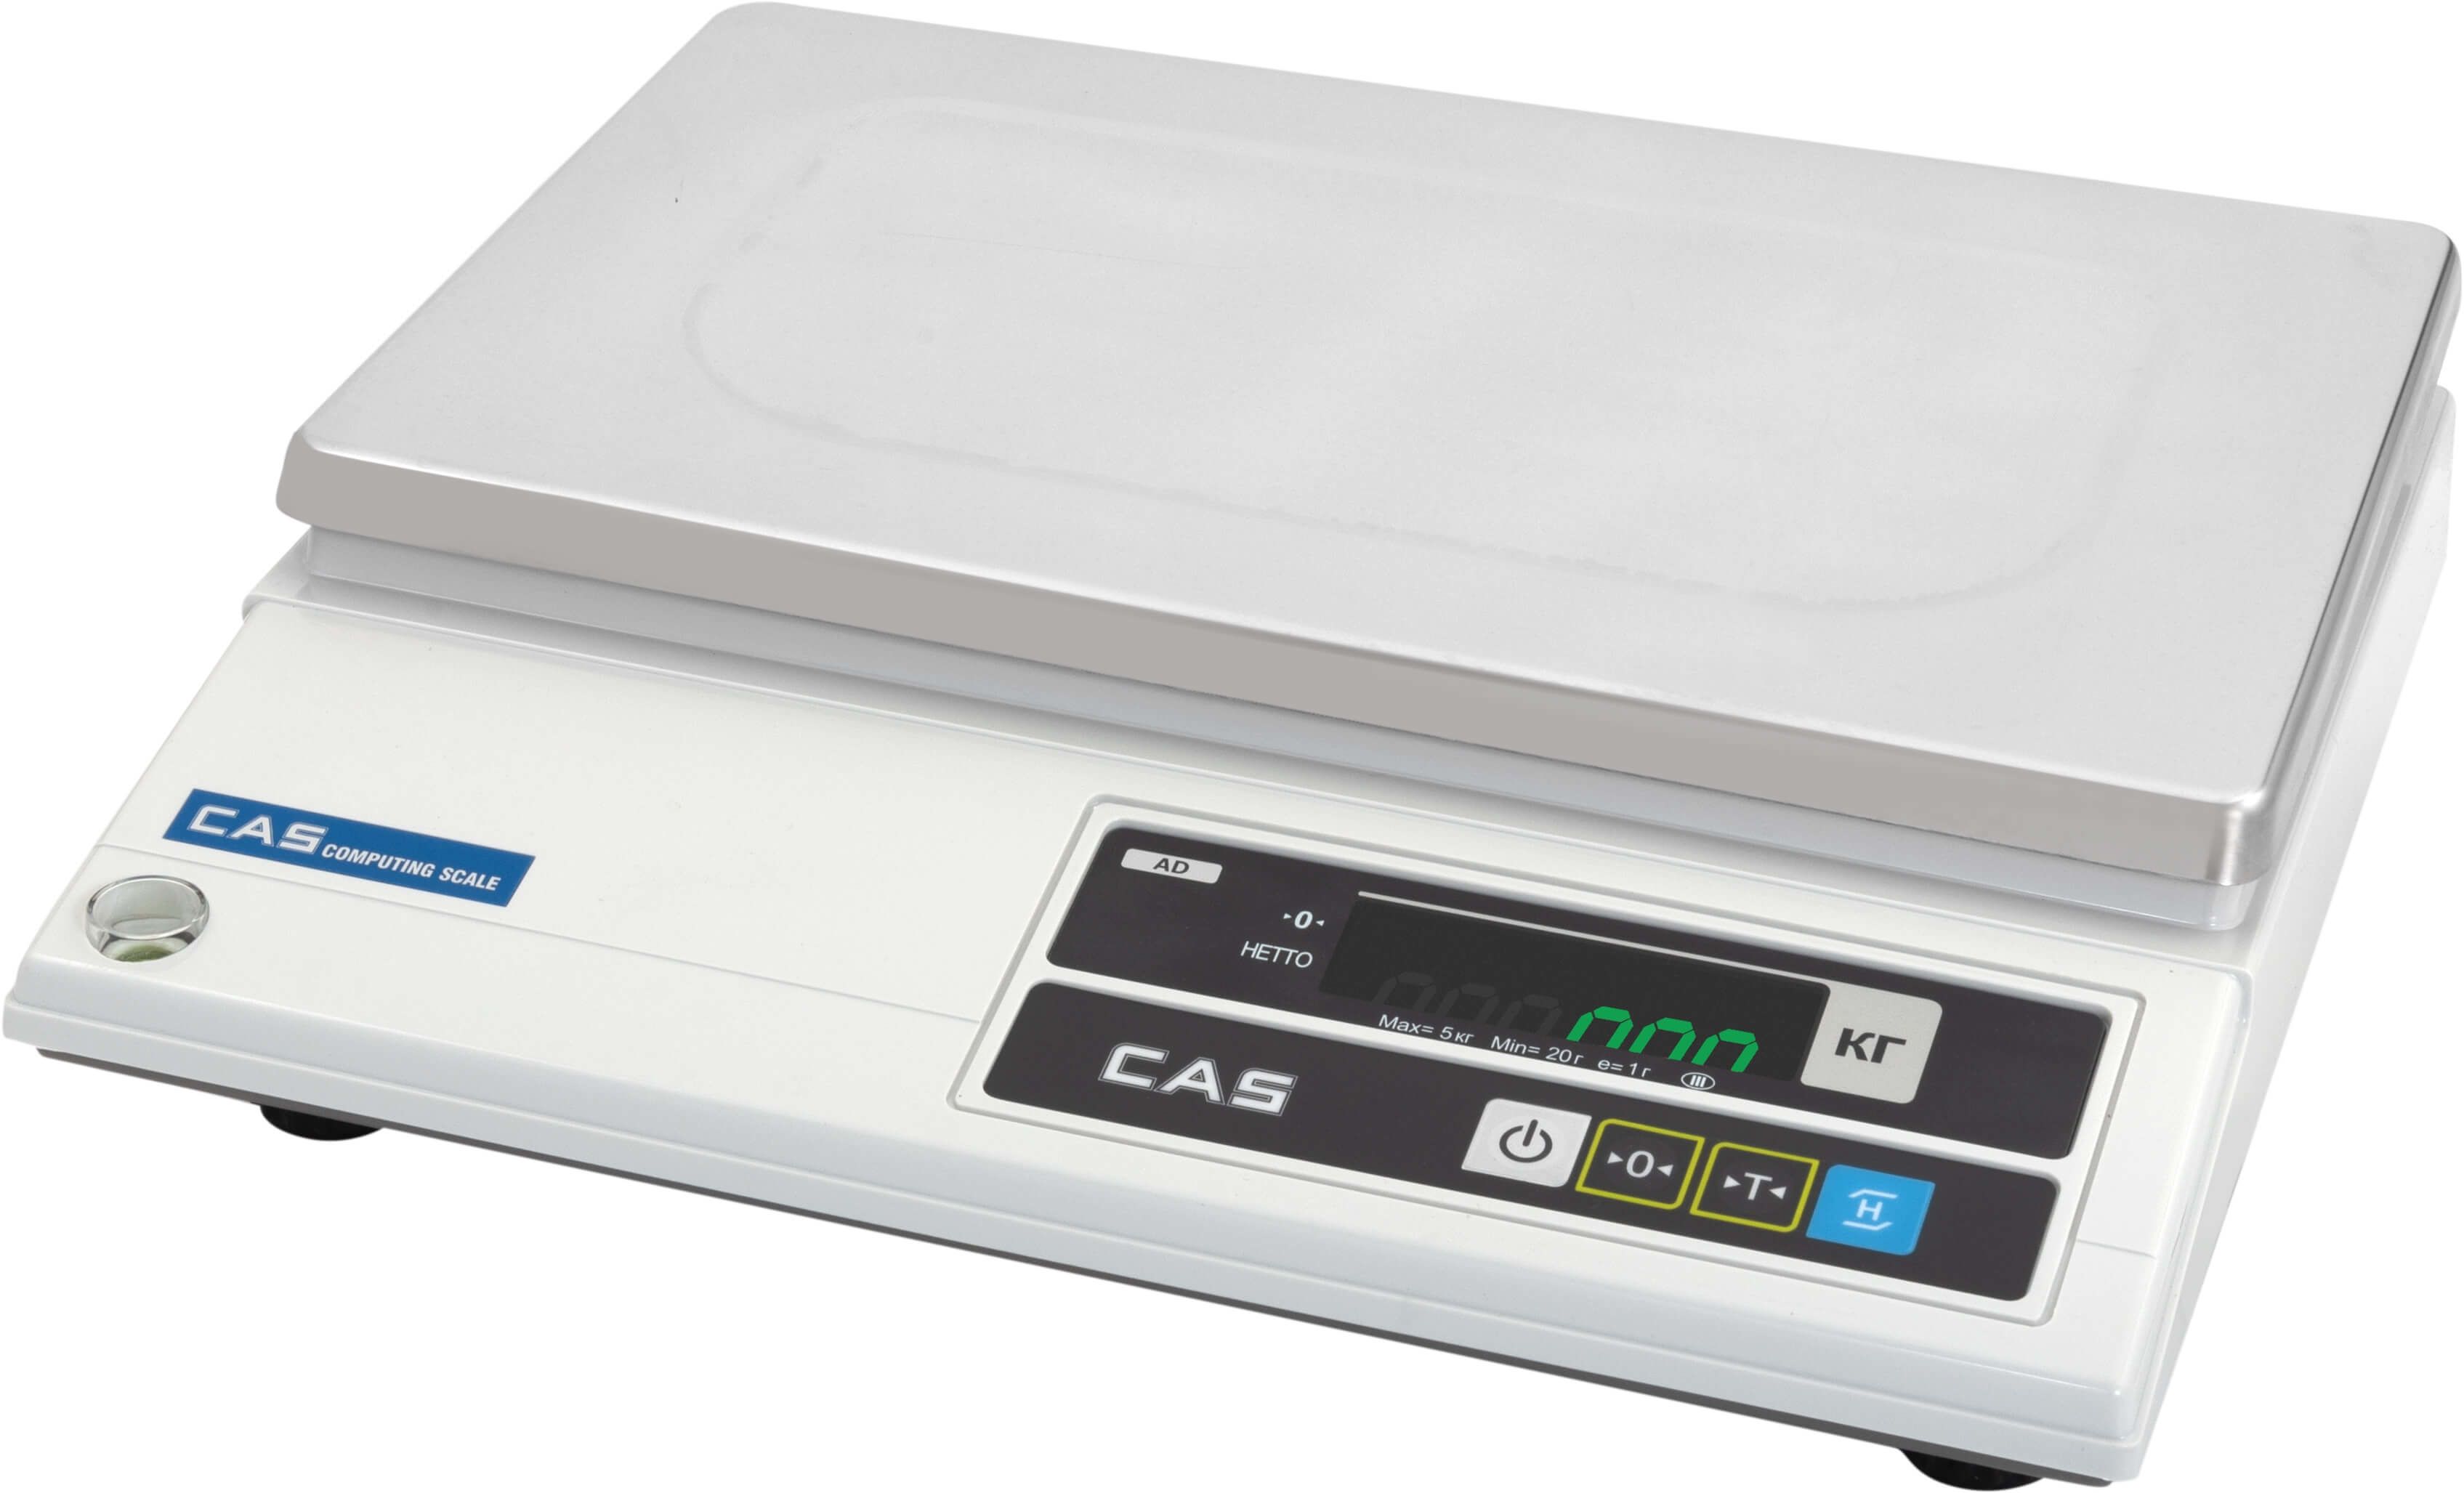 Фото настольные весы cas ad-h повышенной точности c rs-232 для подключения к пк, pos или кассе